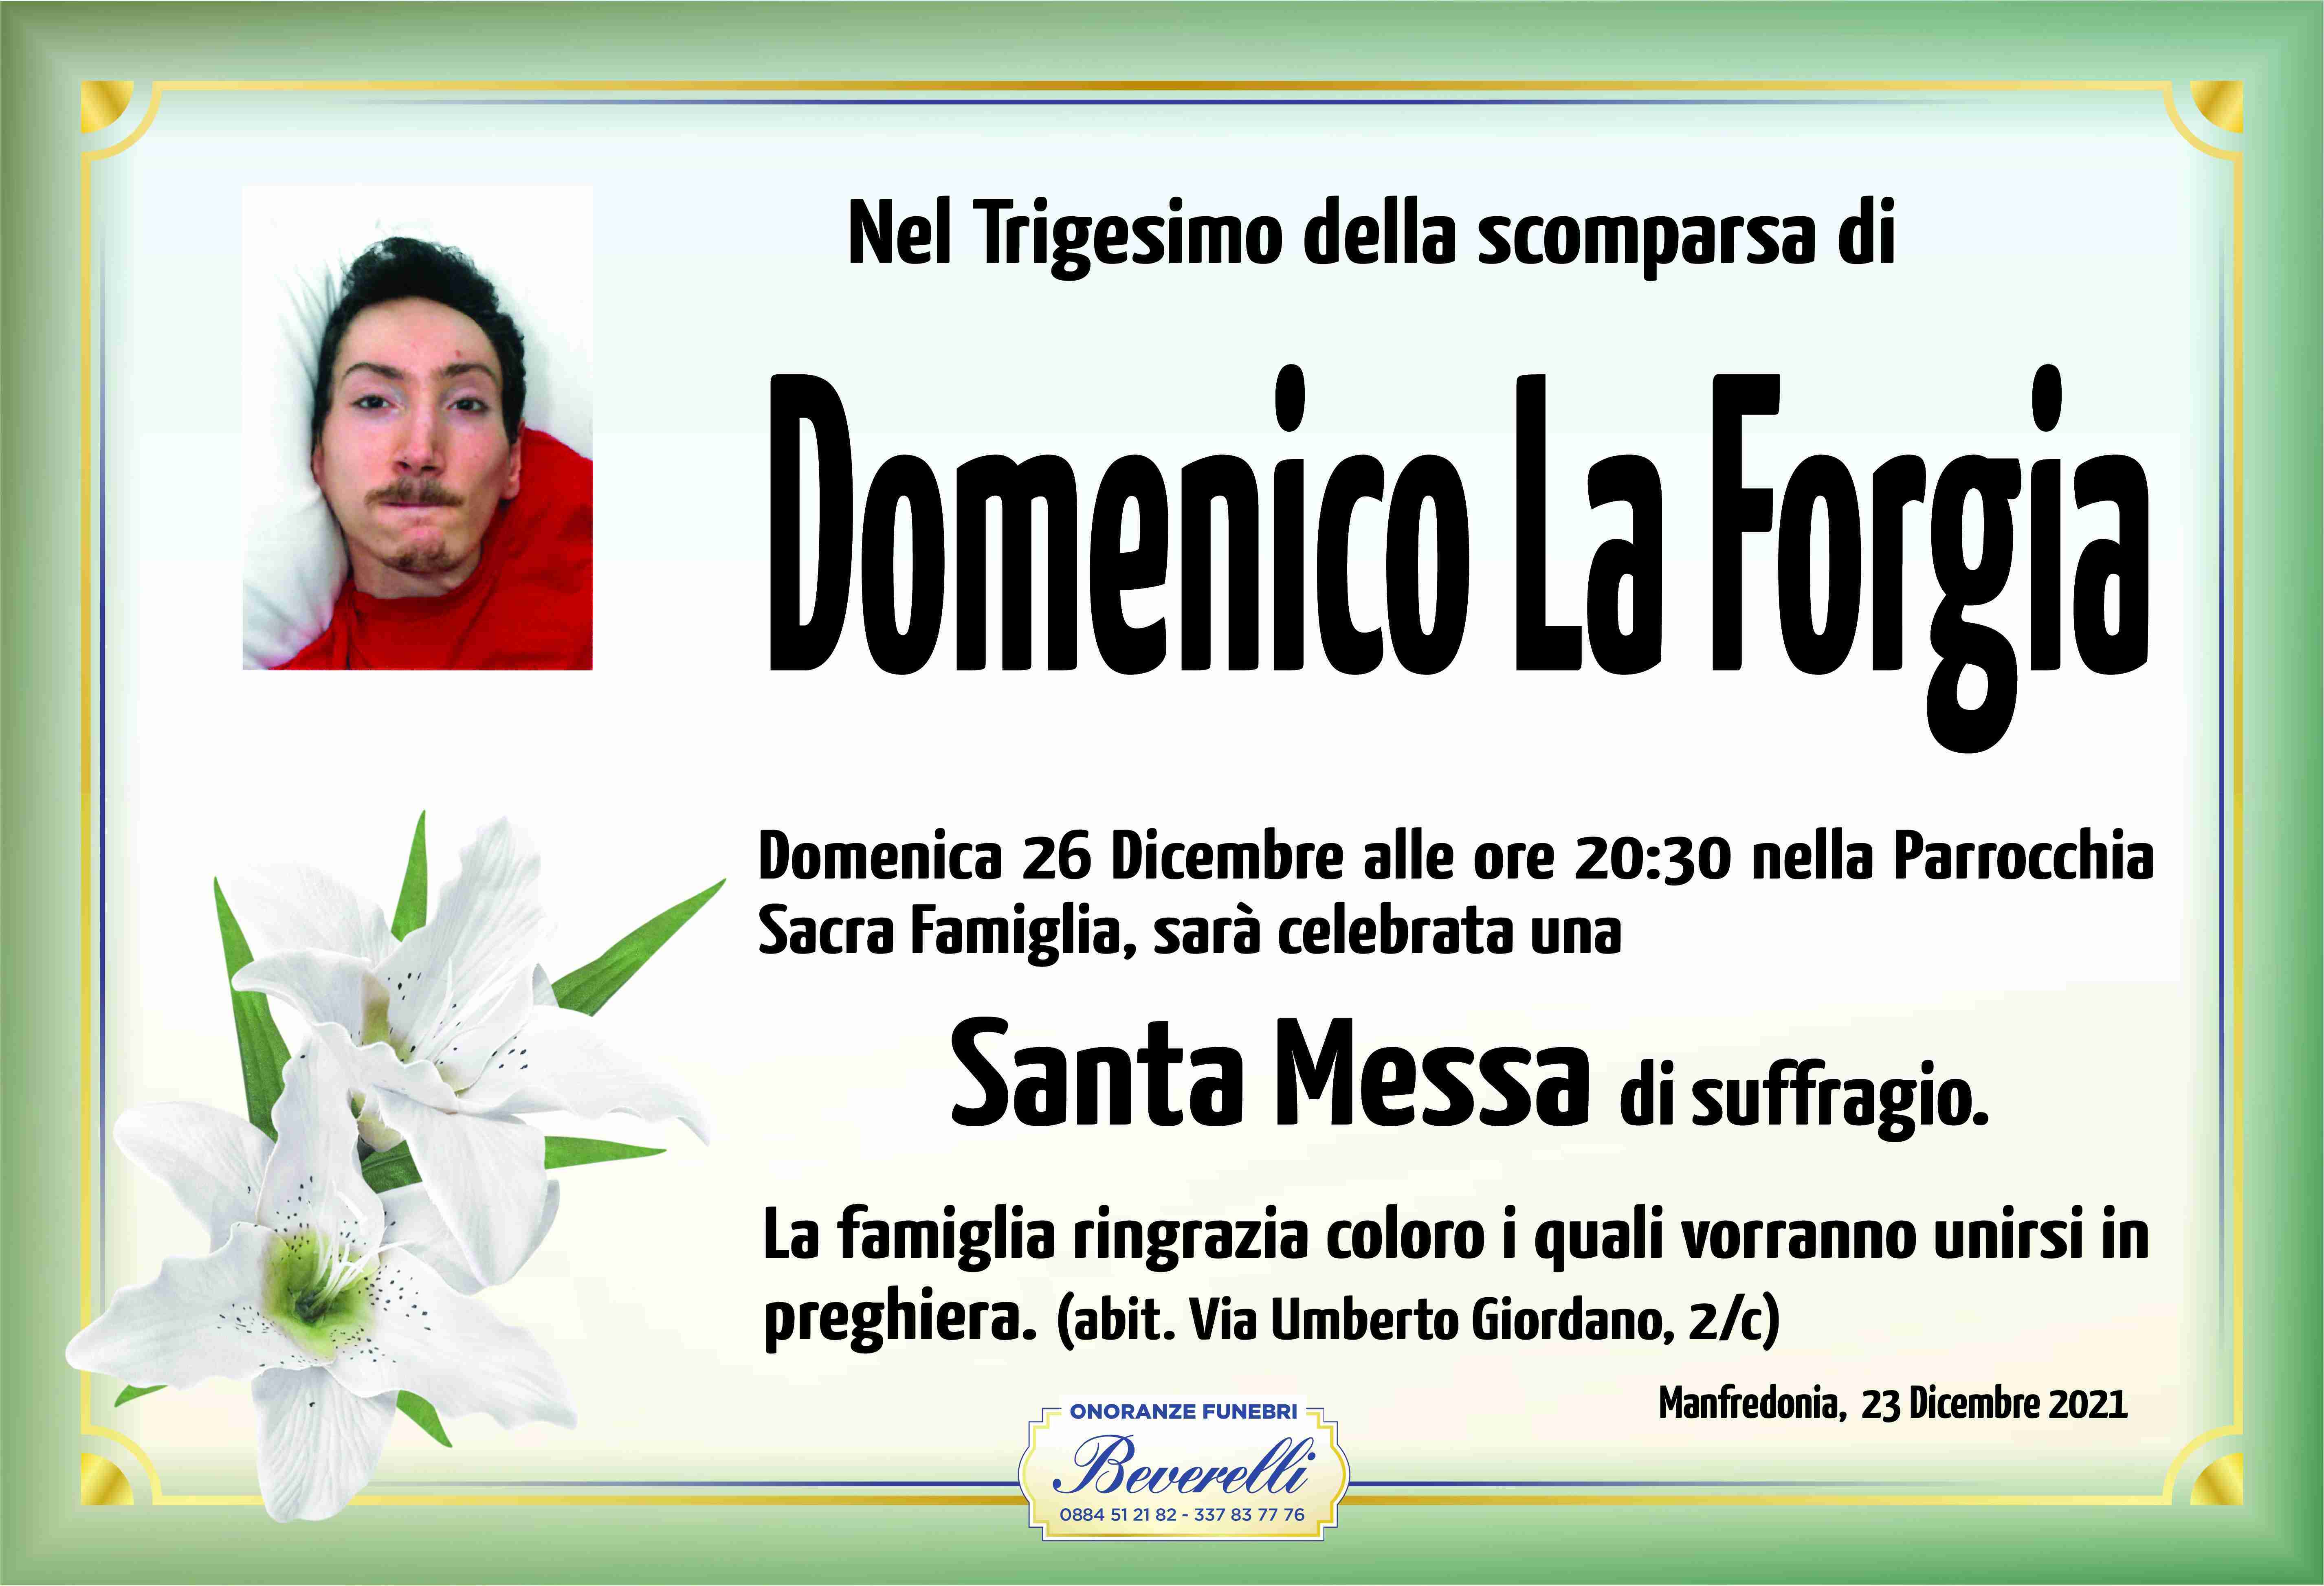 Domenico La Forgia